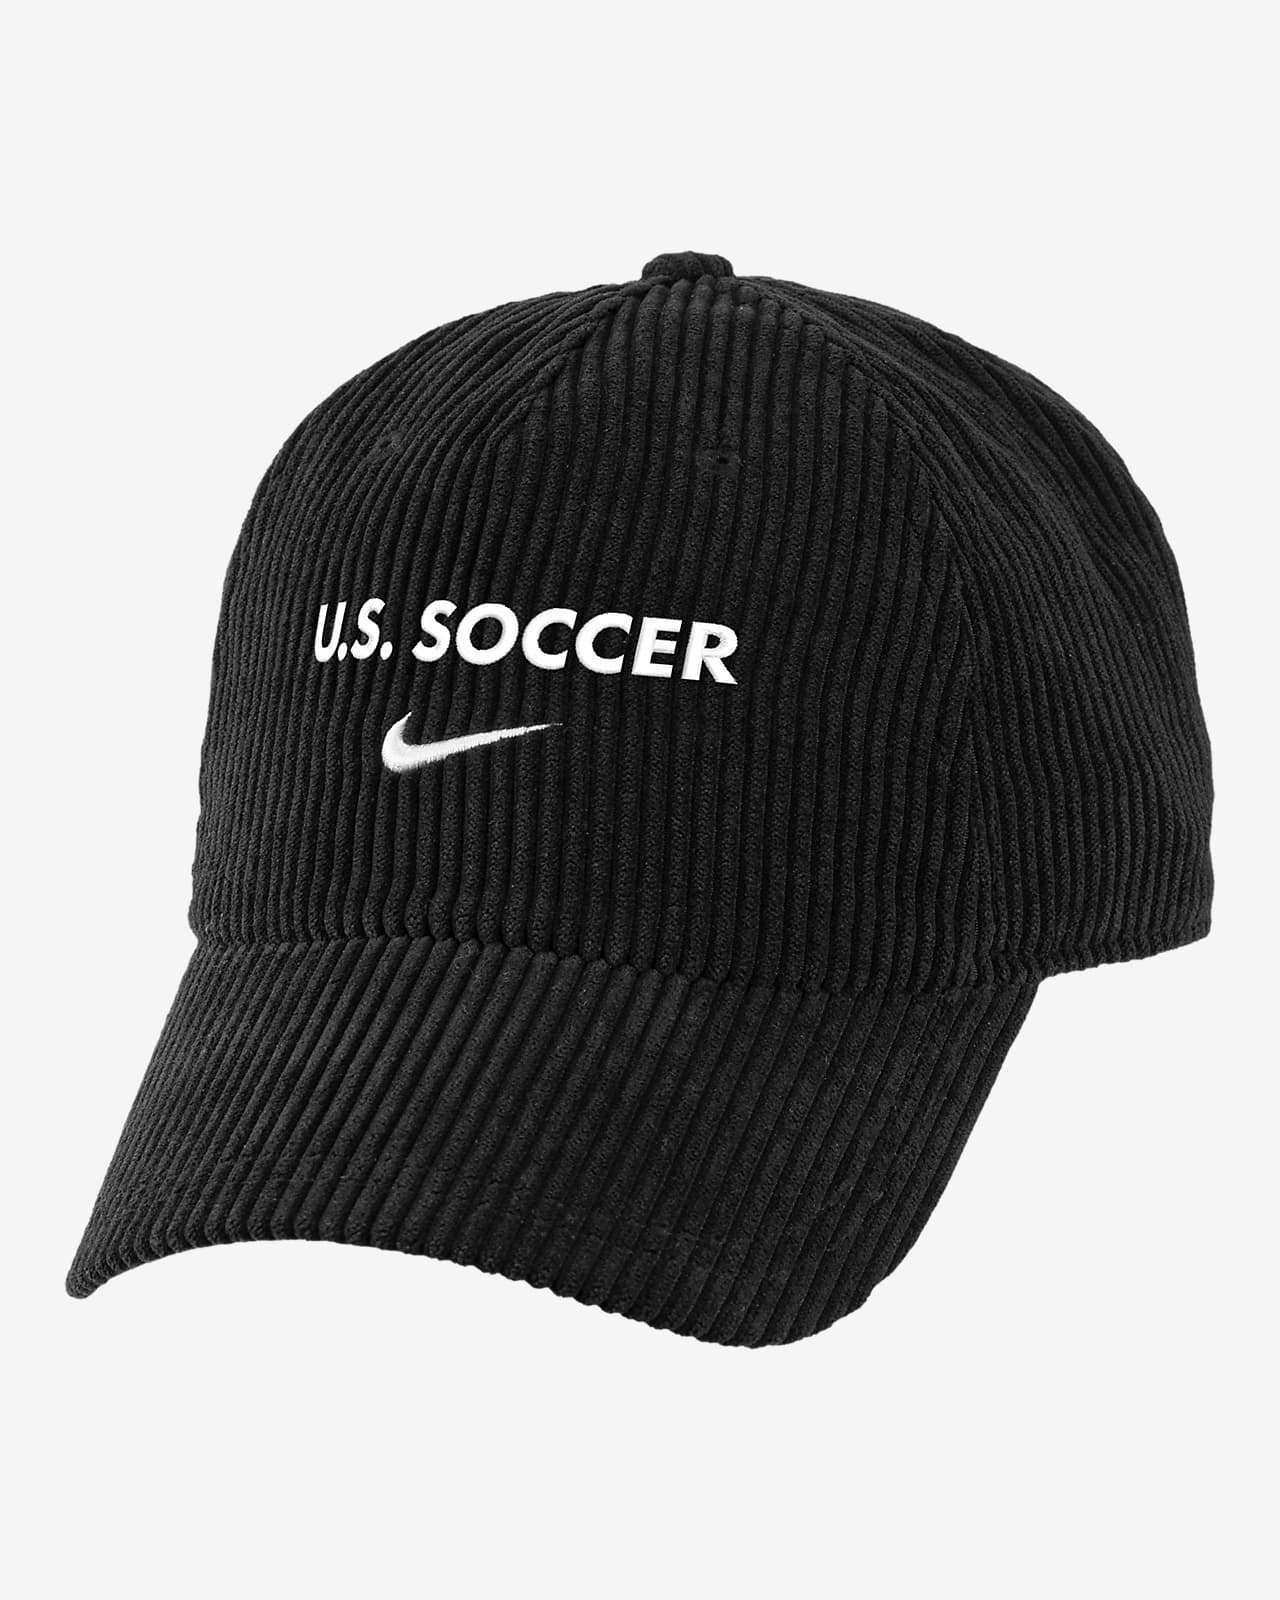 USWNT Nike Soccer Corduroy Cap